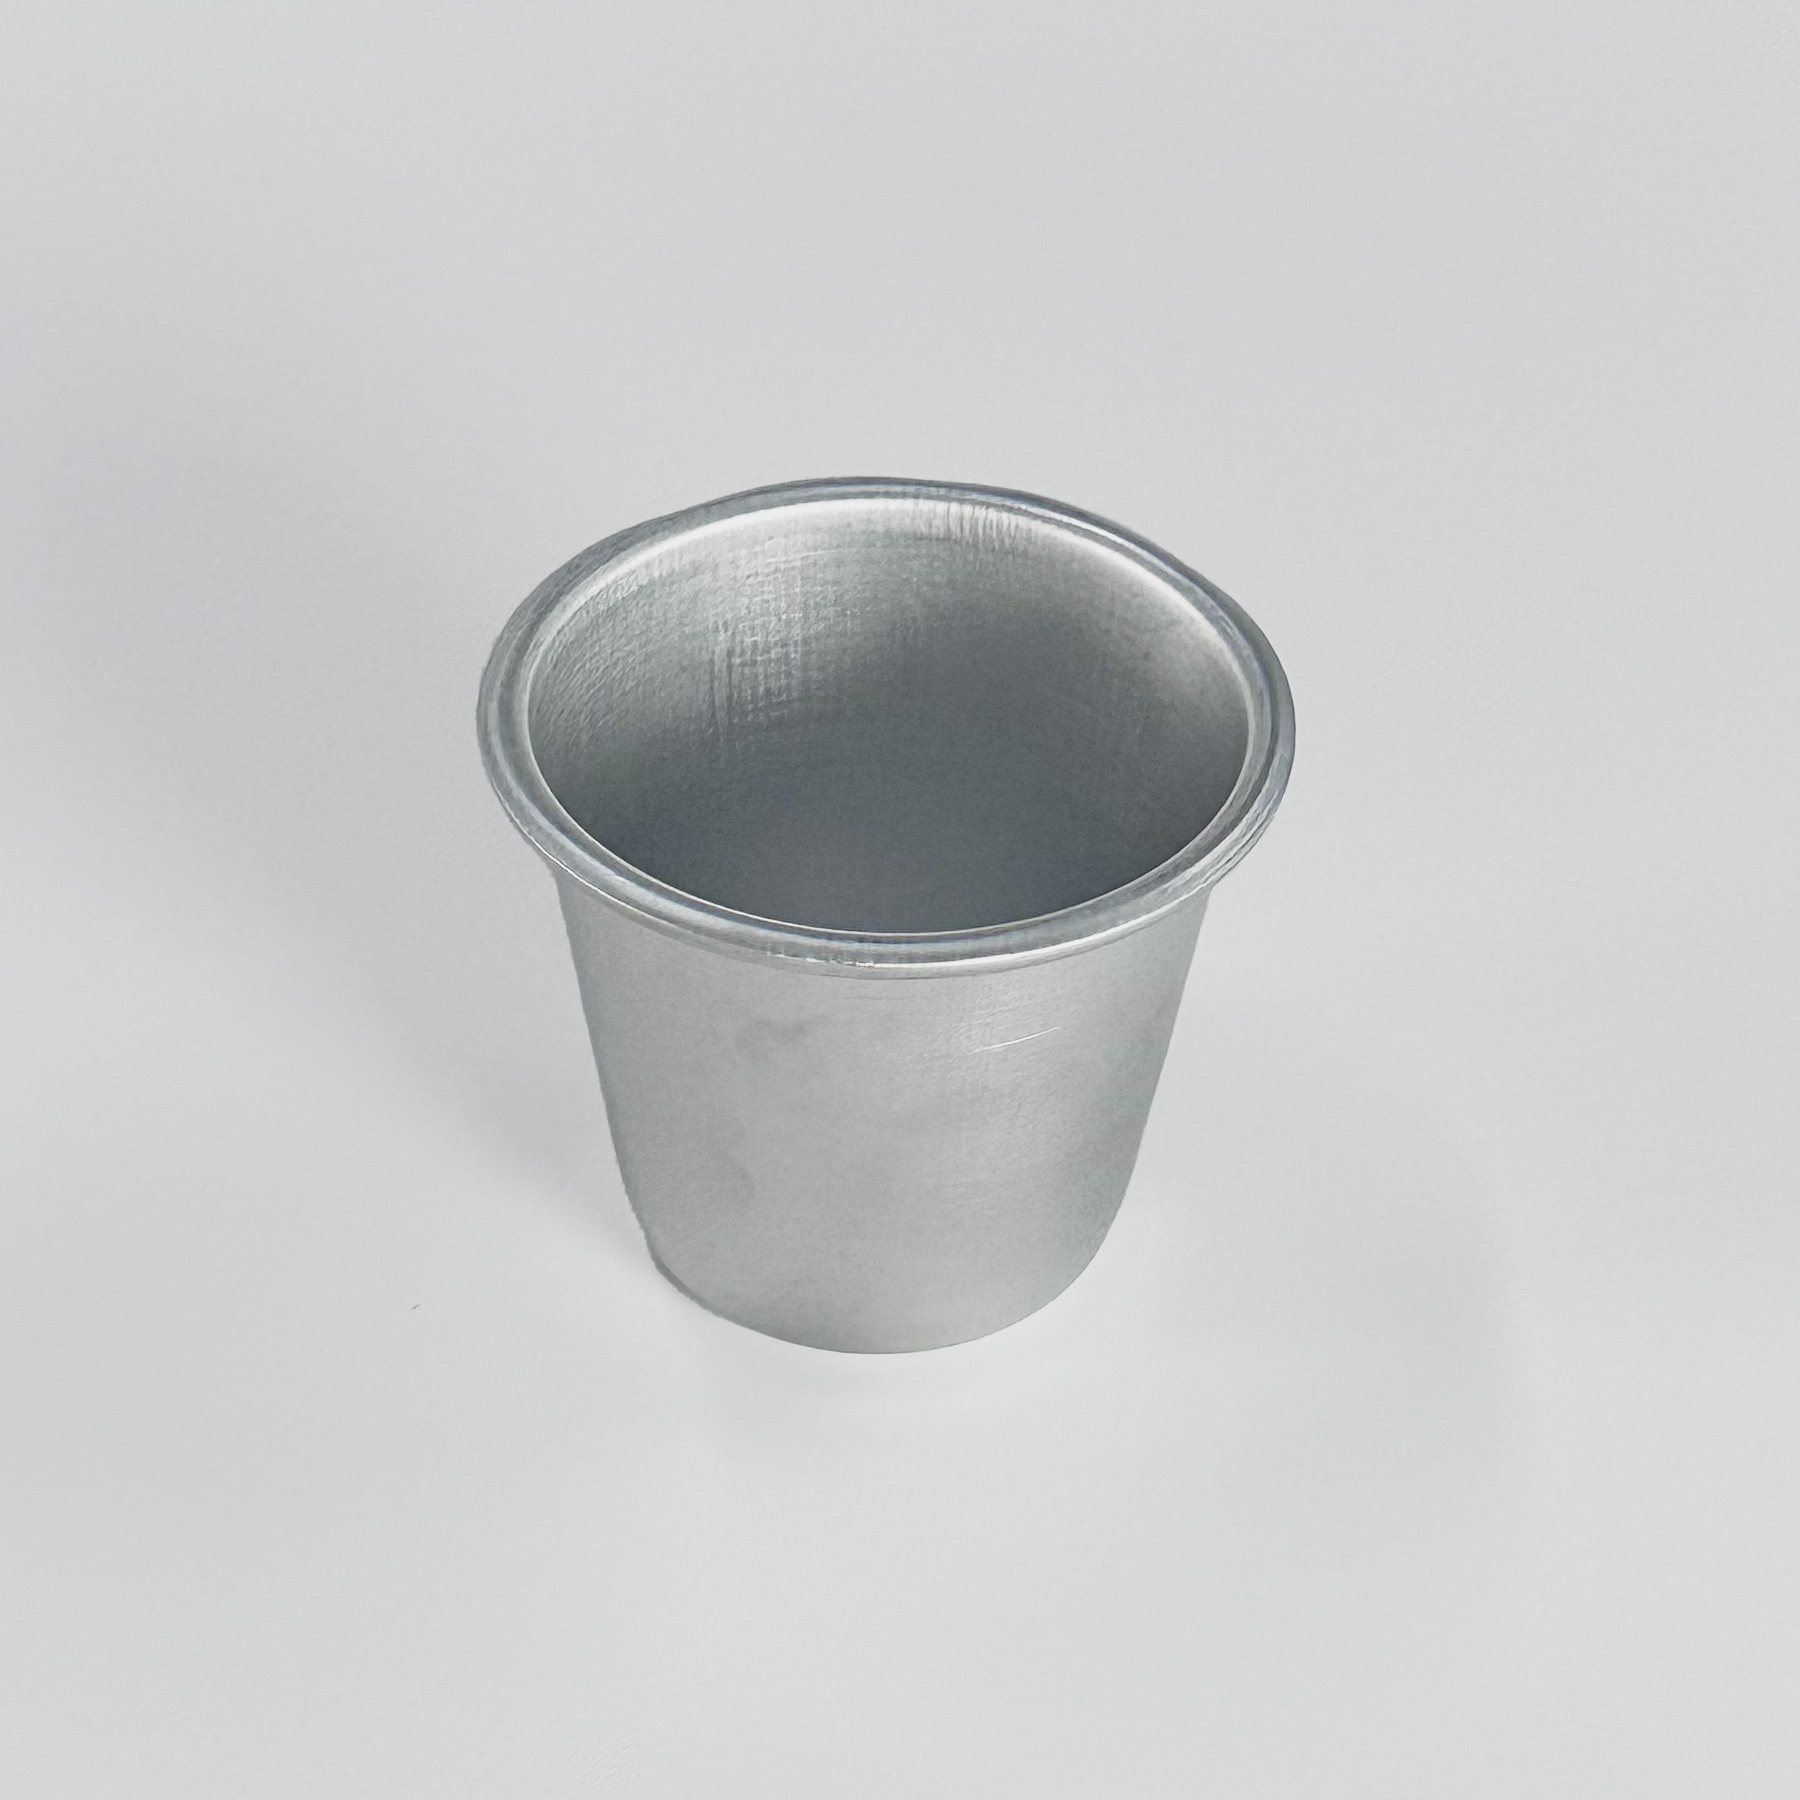 cup-mould-7-5x6-5cm